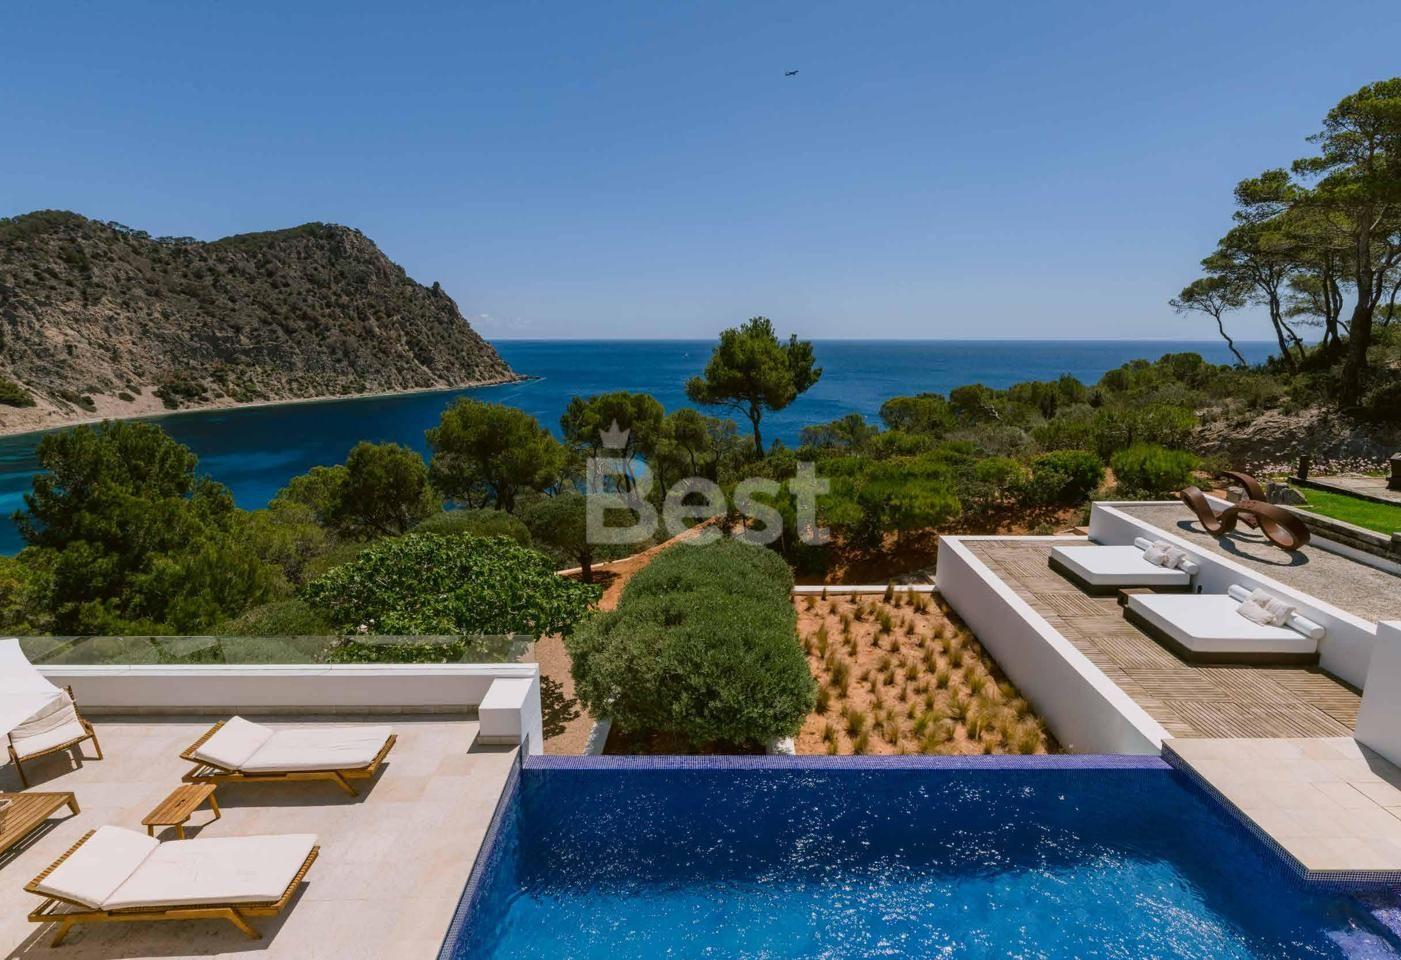 Casa con vistas al mar en alquiler en Santa Eulalia, Ibiza REF: CASA SOFIA